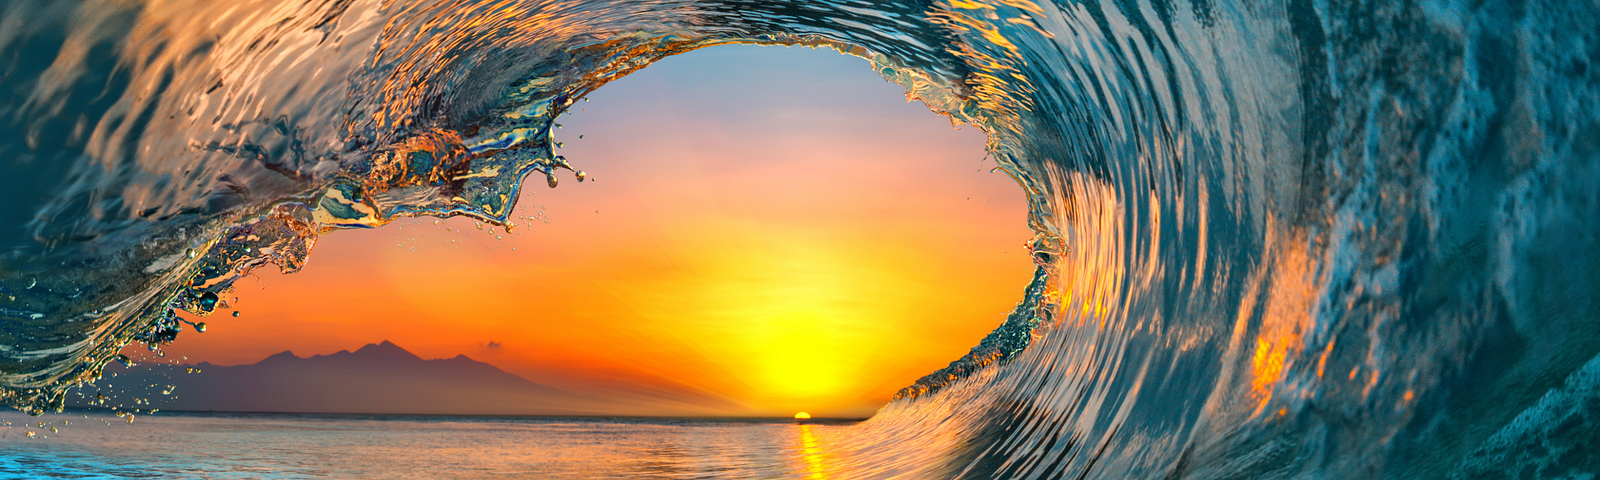 a sunset inside an ocean’s wave